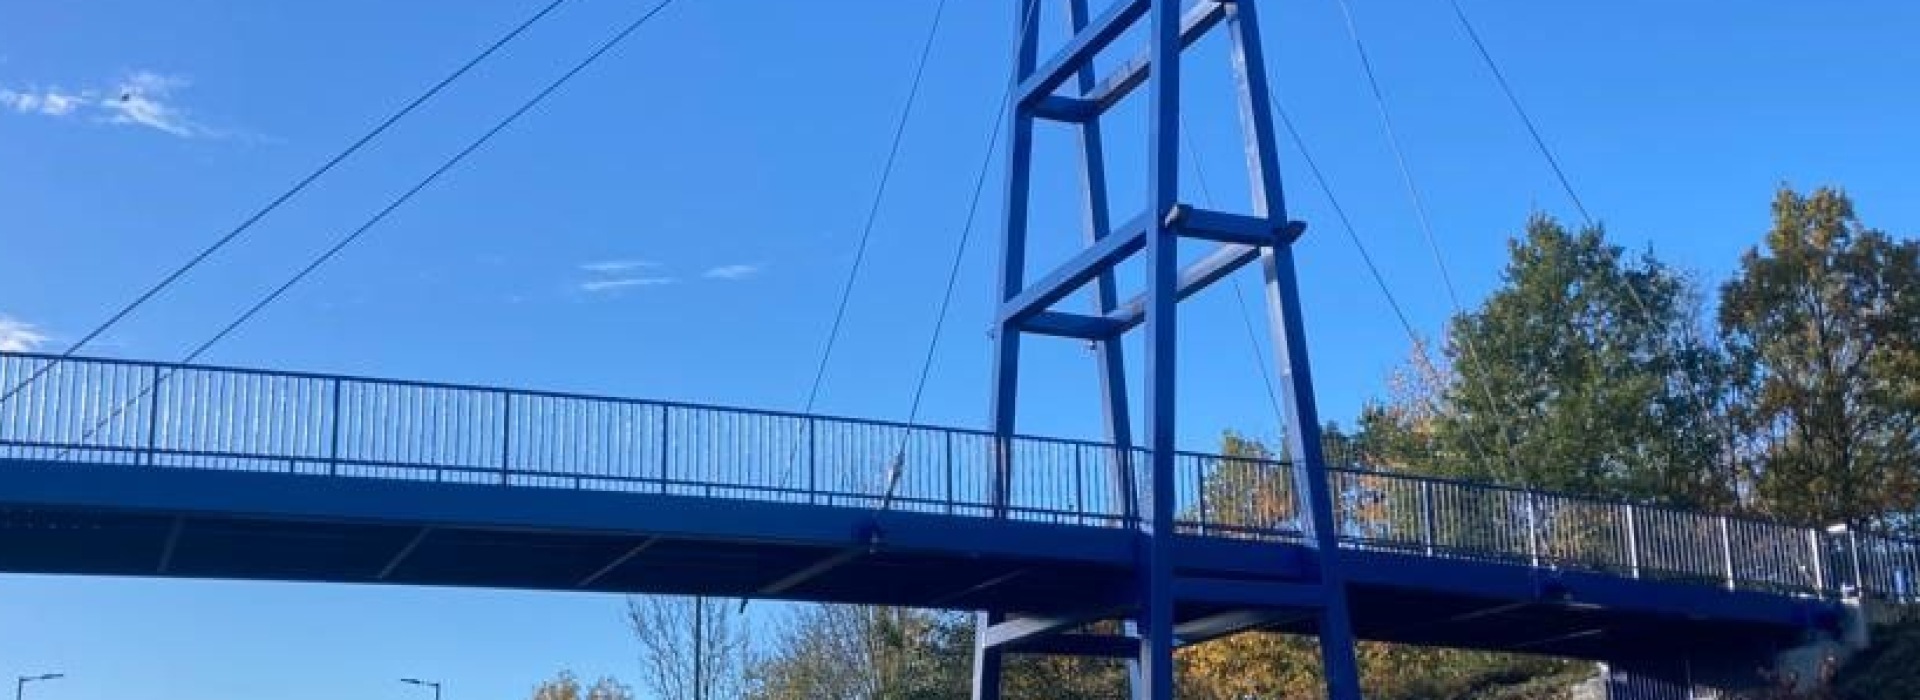 Manvers Footbridge